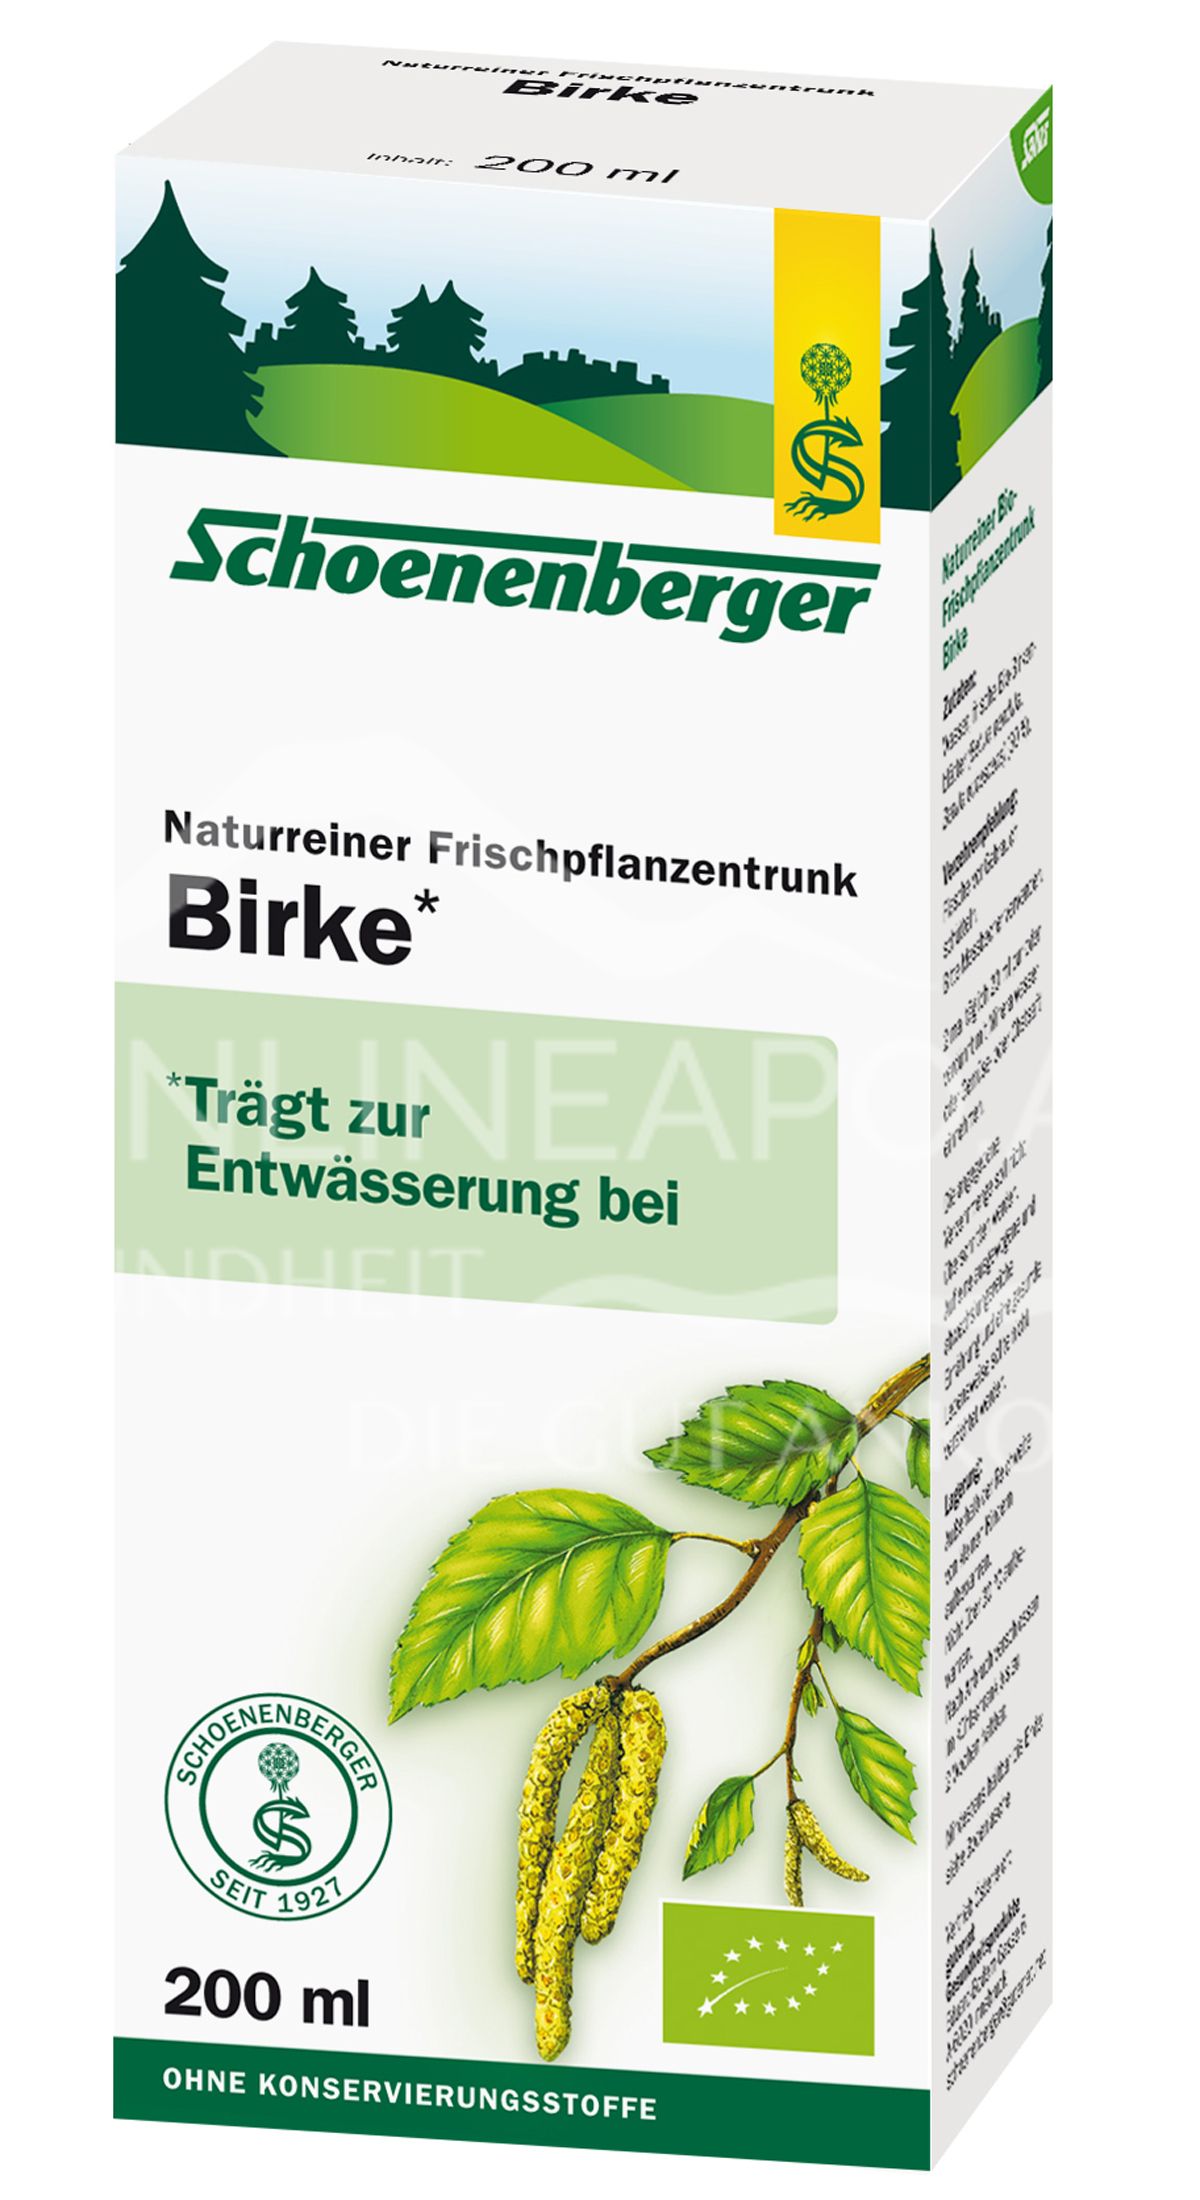 Schoenenberger Birke Naturreiner Frischpflanzentrunk (BIO)